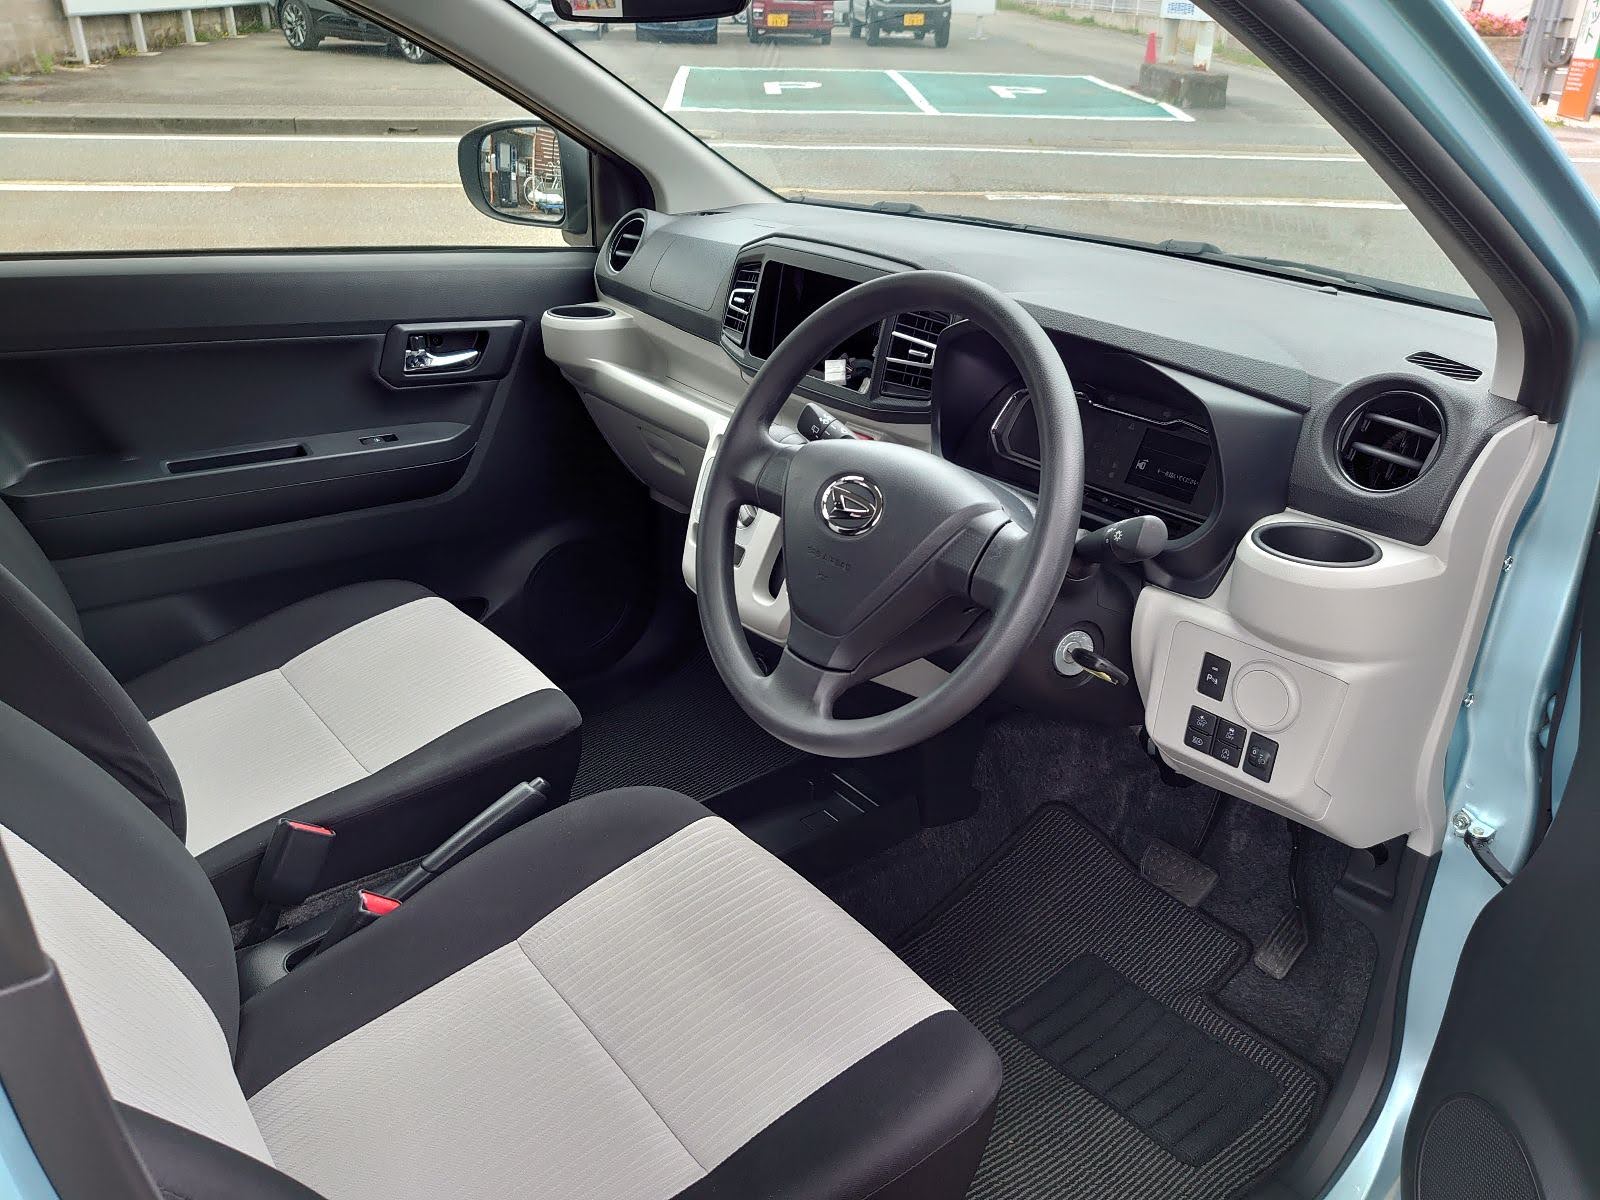 Daihatsu e:S interior driver front seat